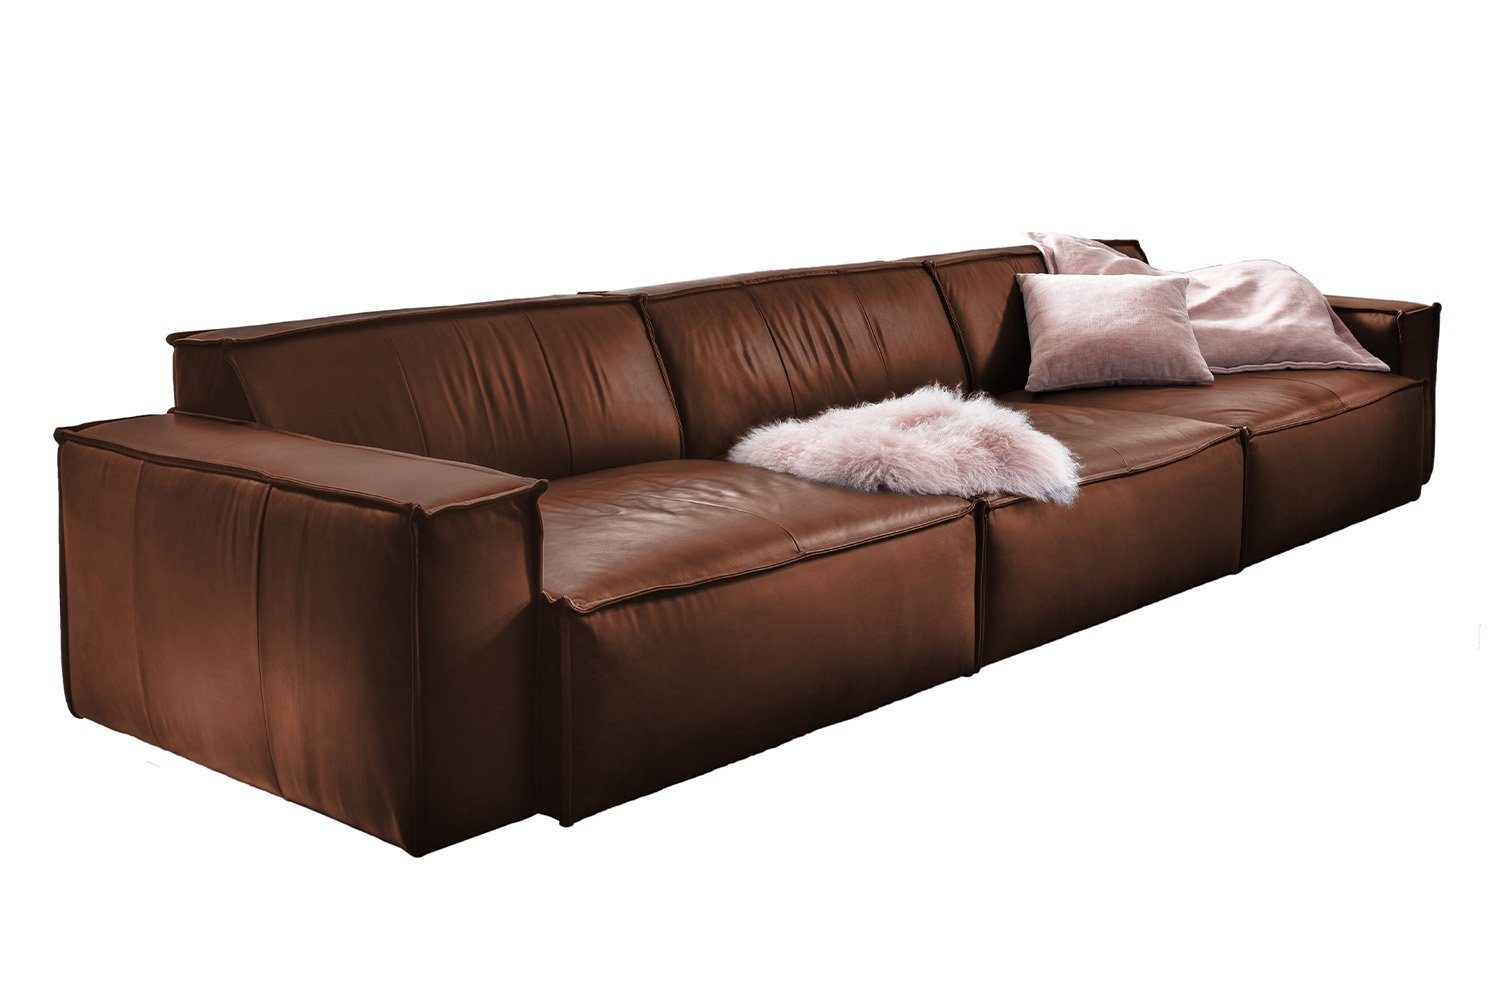 KAWOLA Riesensofa Farben Leder verschiedene Sofa braun SAMU,